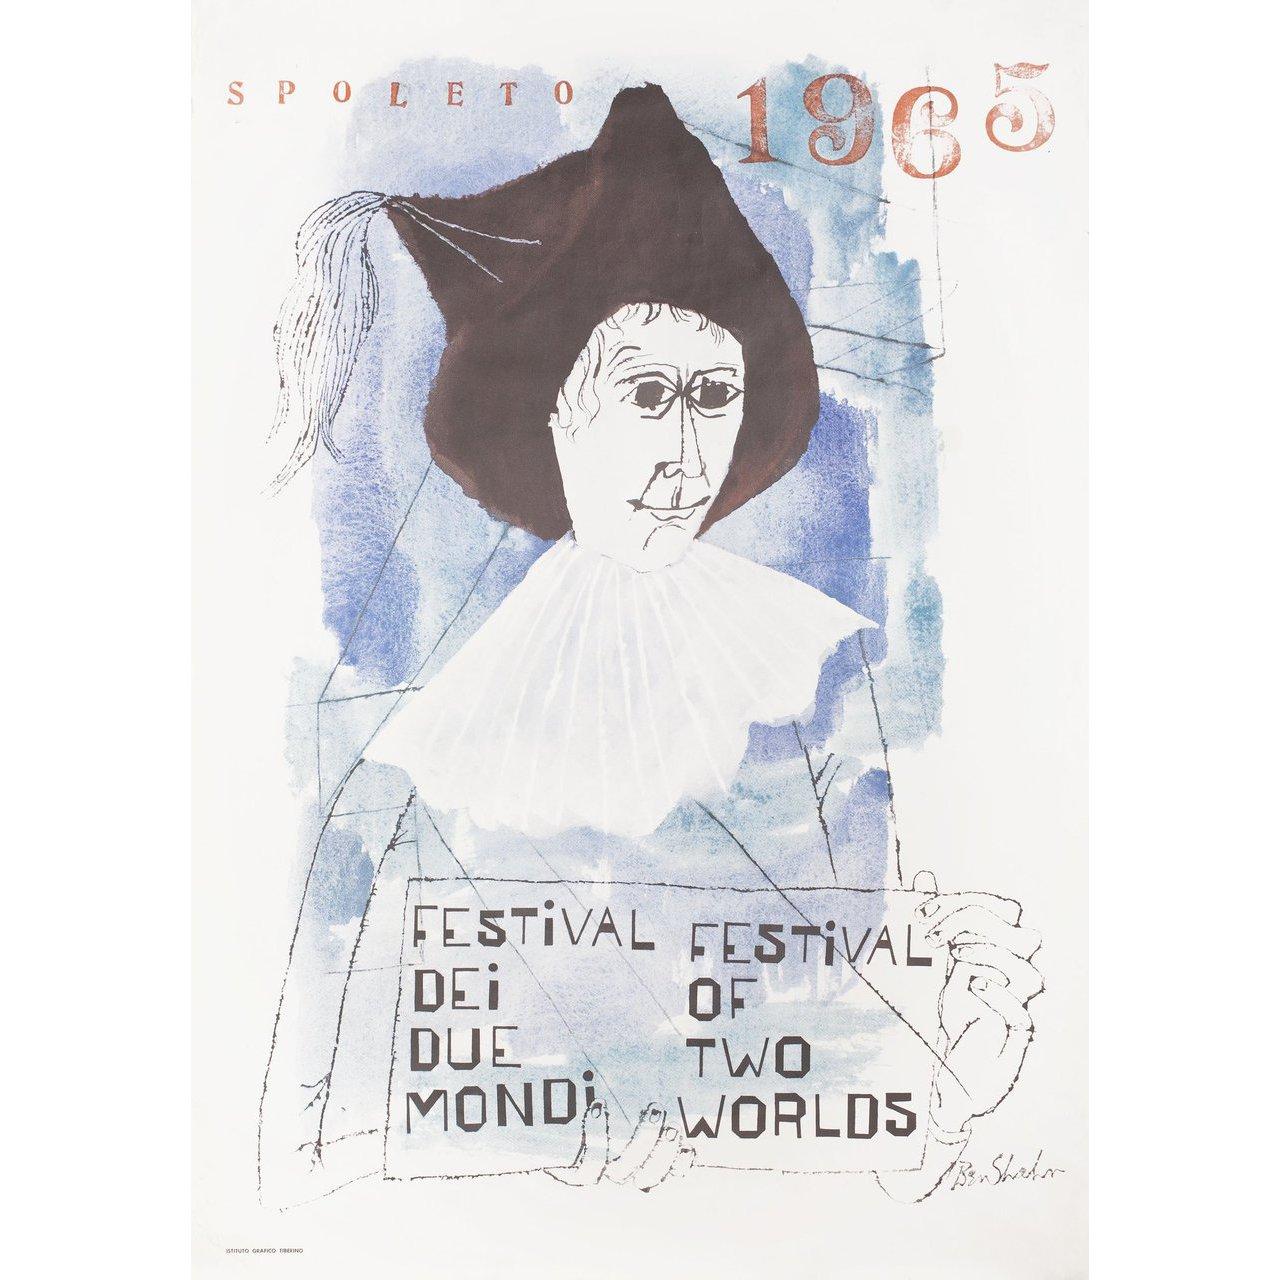 Spoleto Festival 1965 Italian Foglio Poster In Fair Condition For Sale In New York, NY